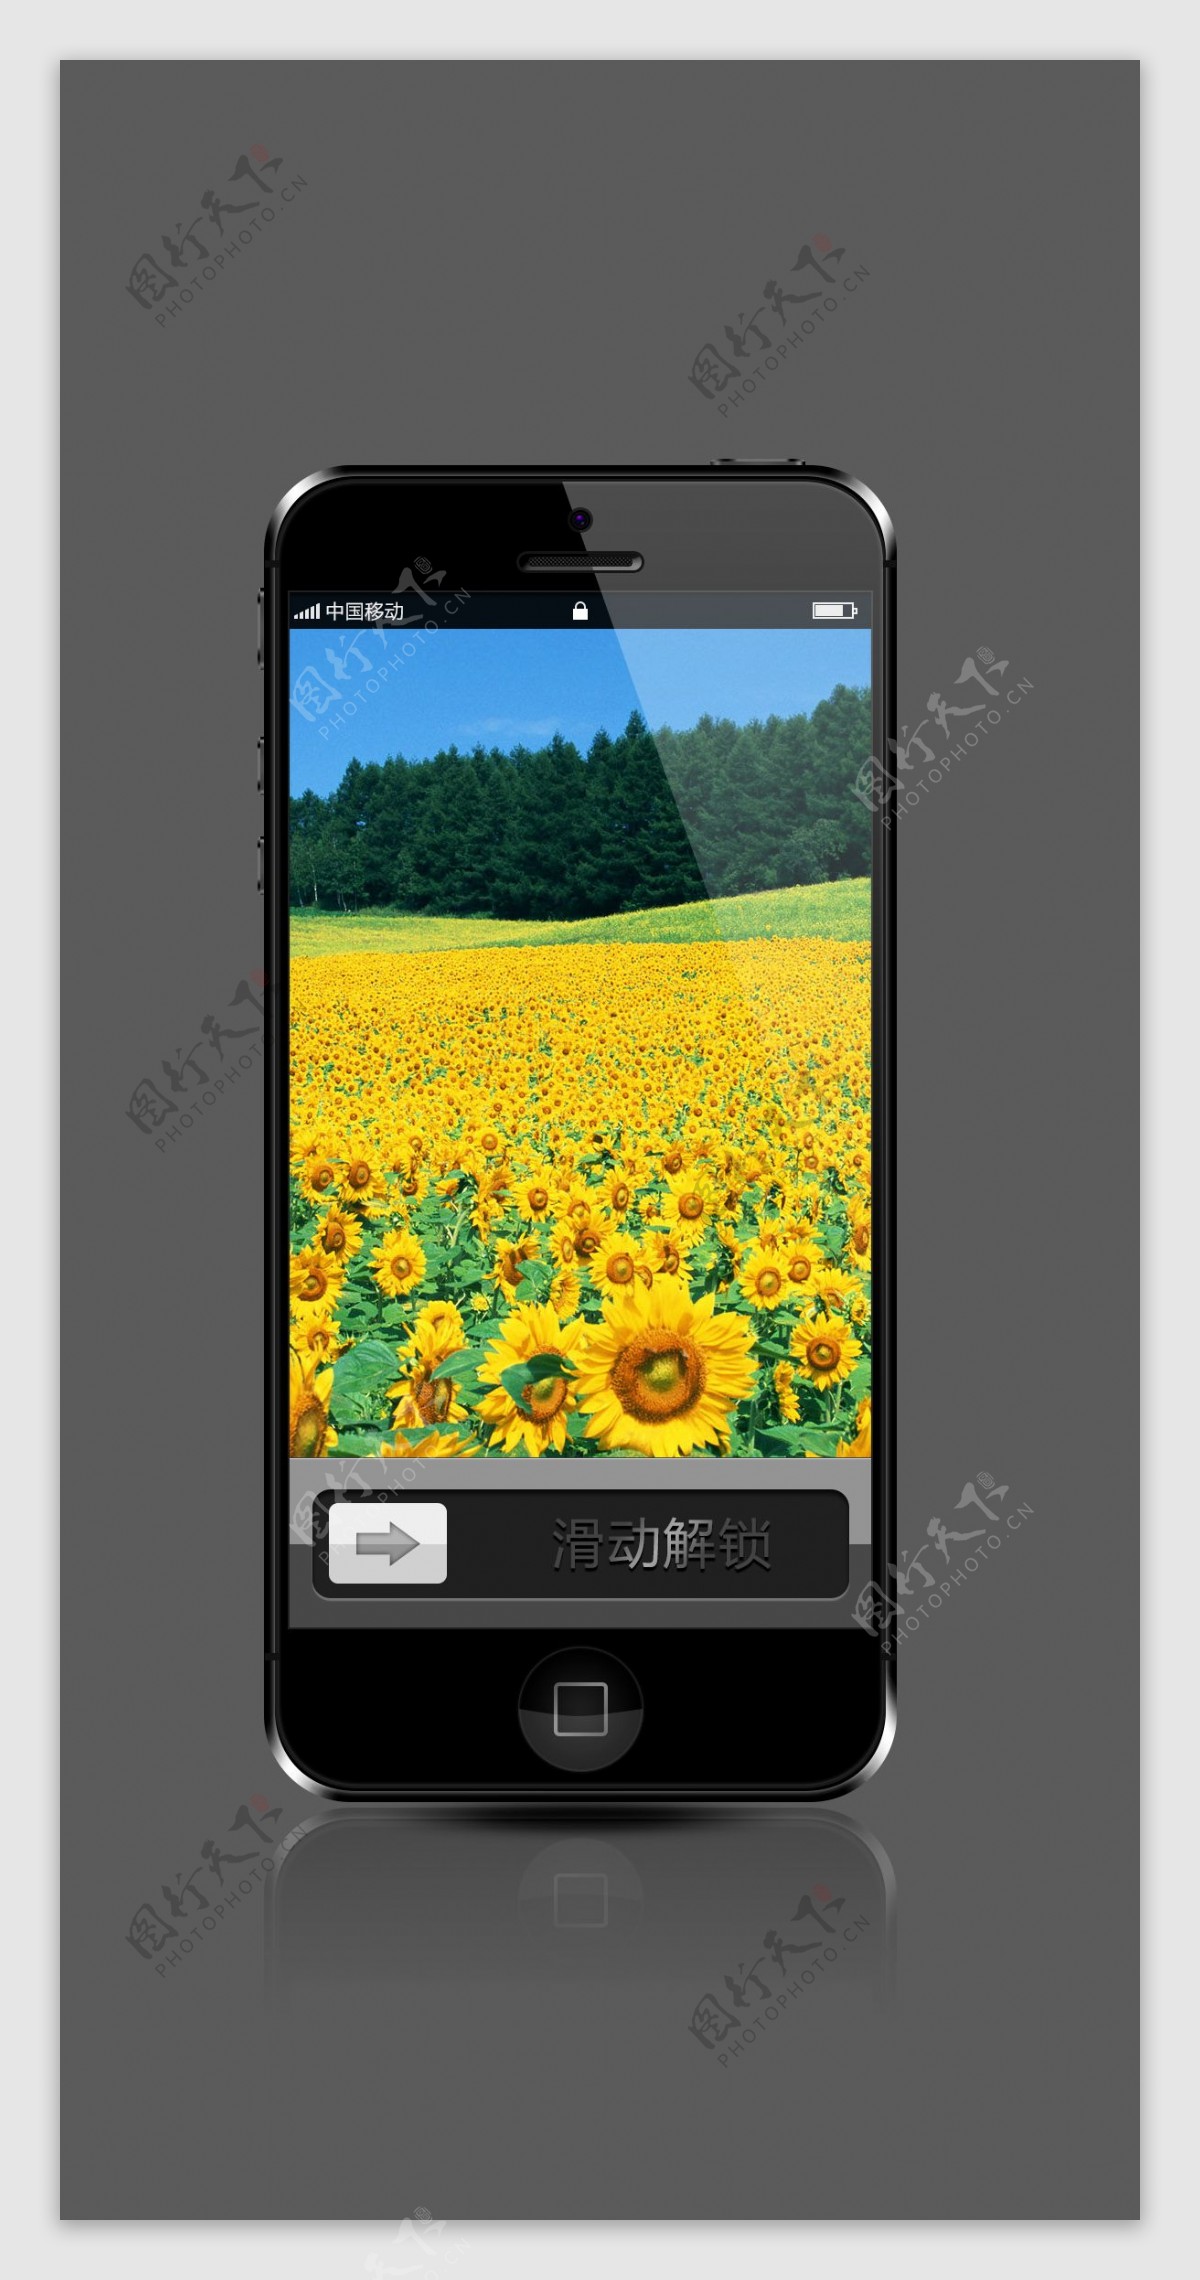 iphone5手机图片